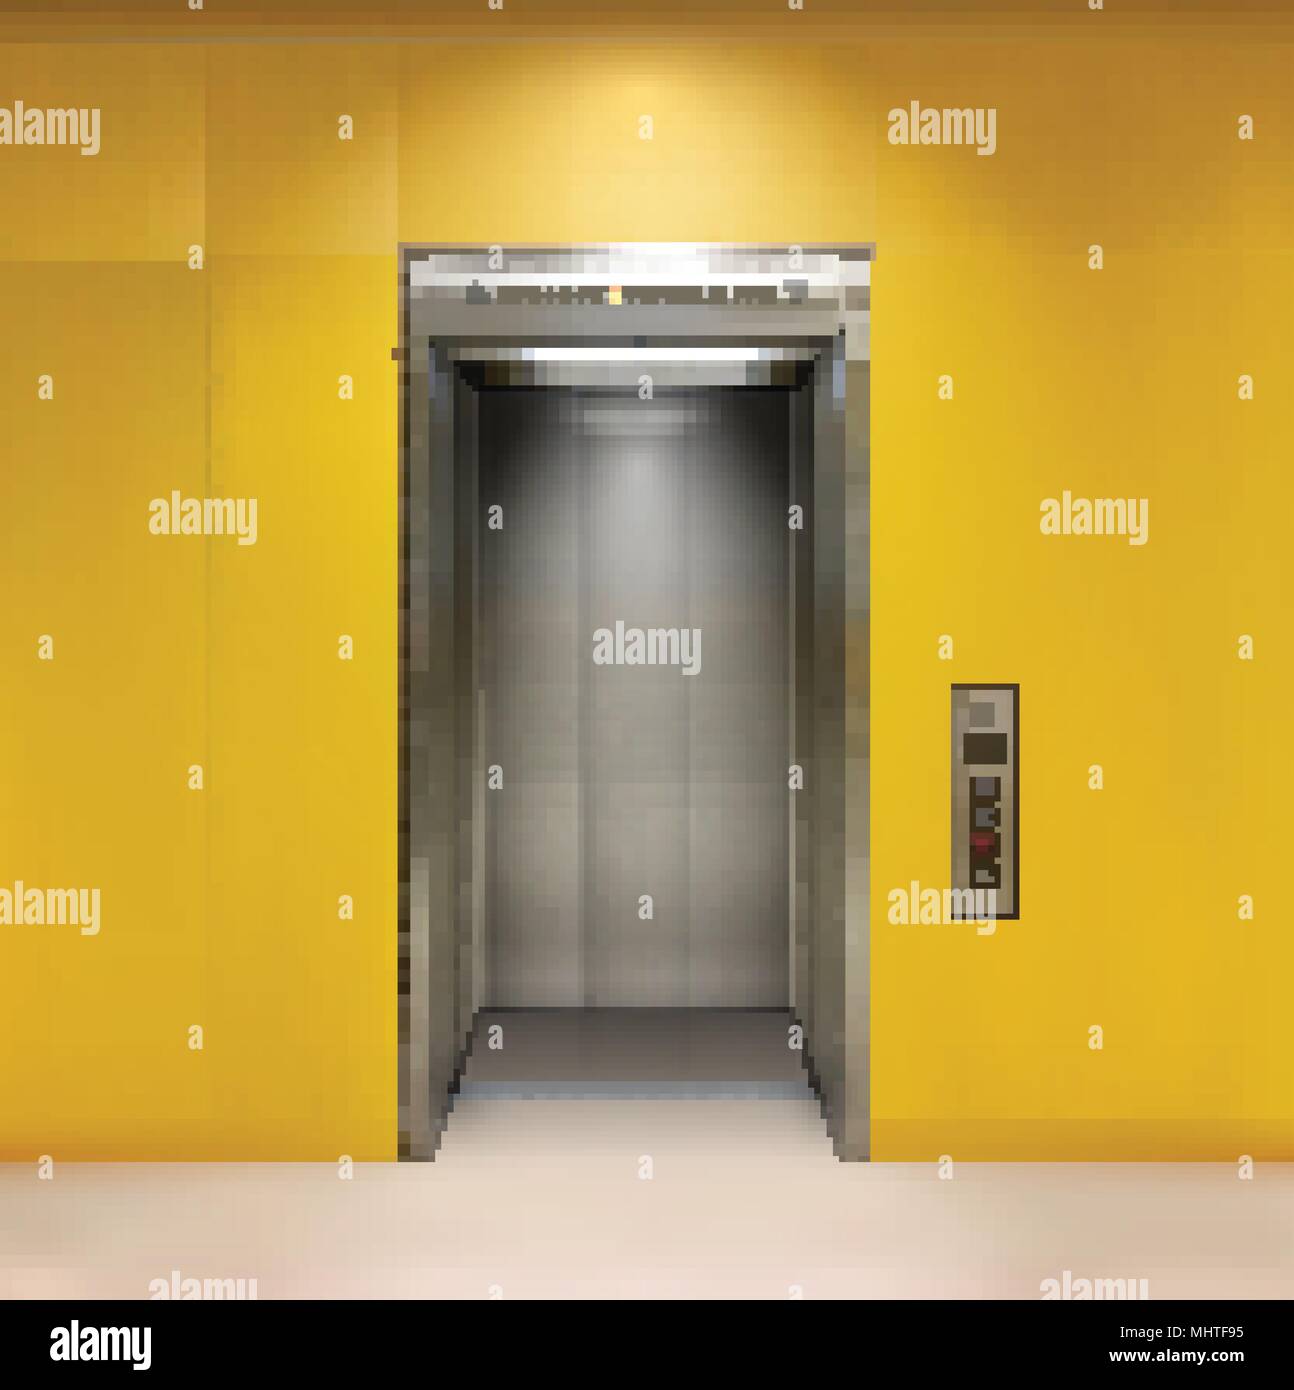 Metall verchromt Bürogebäude Aufzugstüren. Offene und geschlossene Variante. Realistische vector Abbildung gelb Wandpaneele Bürogebäude Aufzug. Stock Vektor